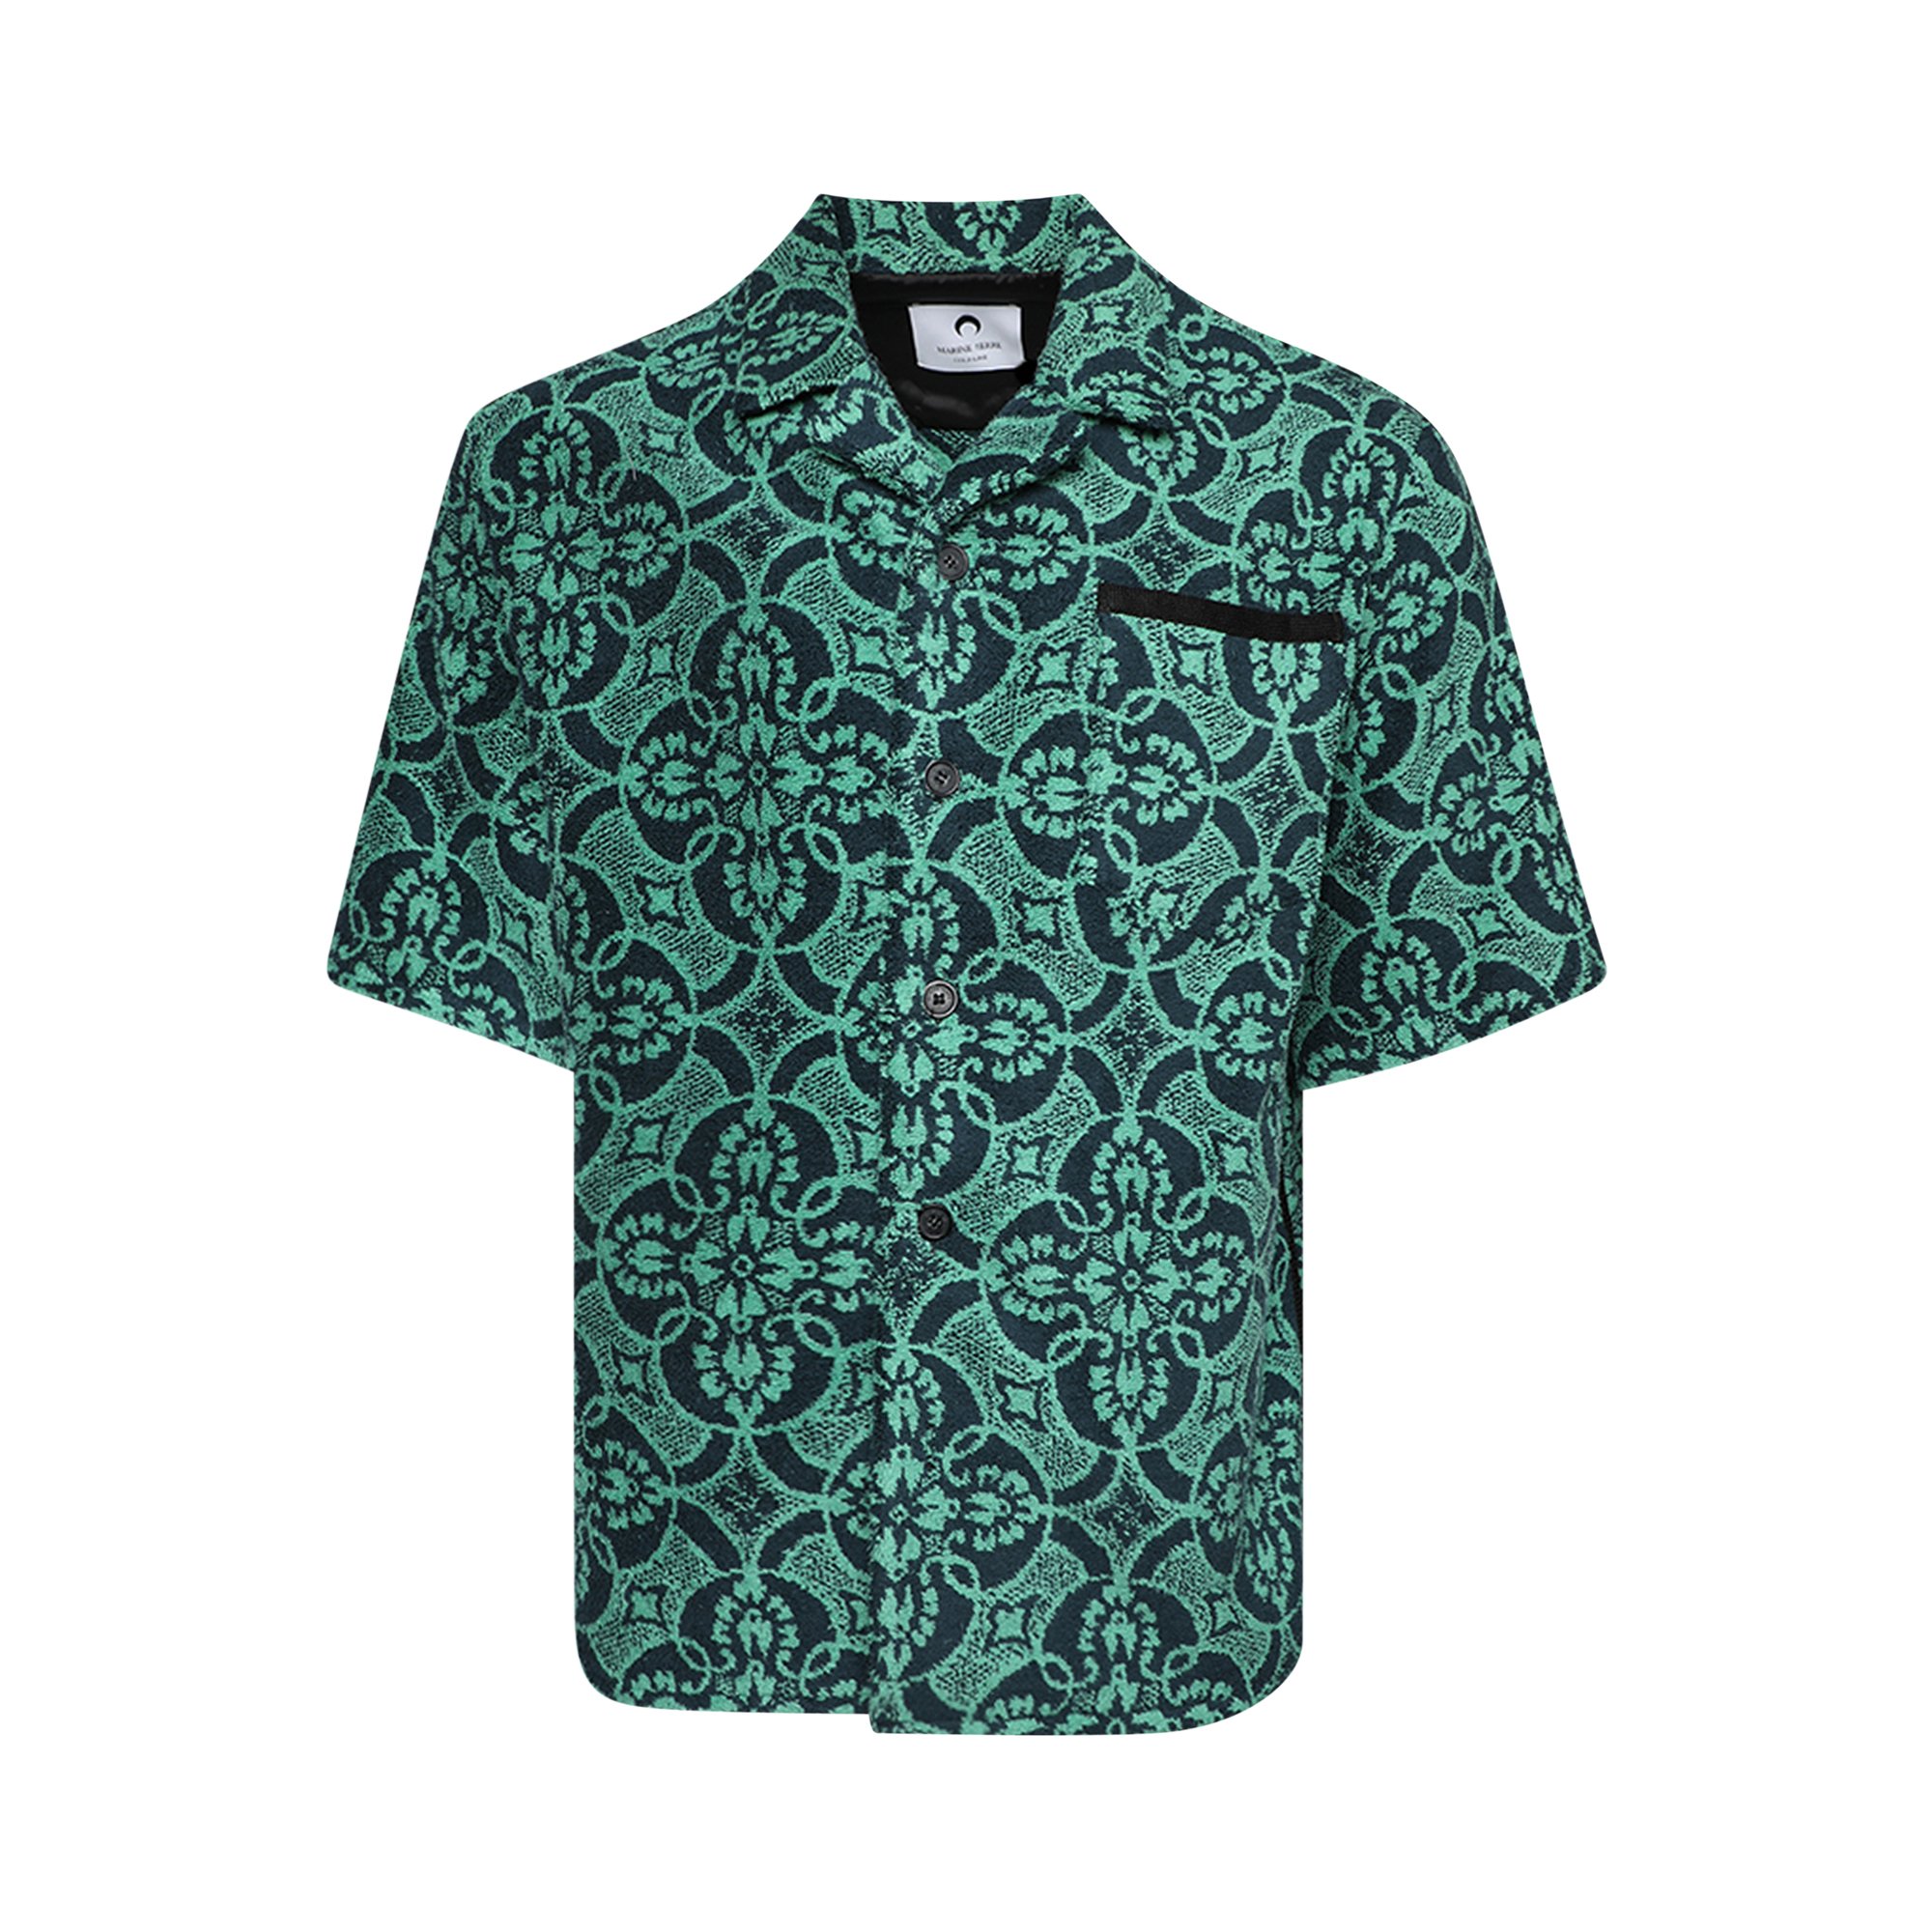 Рубашка для боулинга Marine Serre Oriental Towels, Восточный ярко-зеленый oriental style восточный стиль